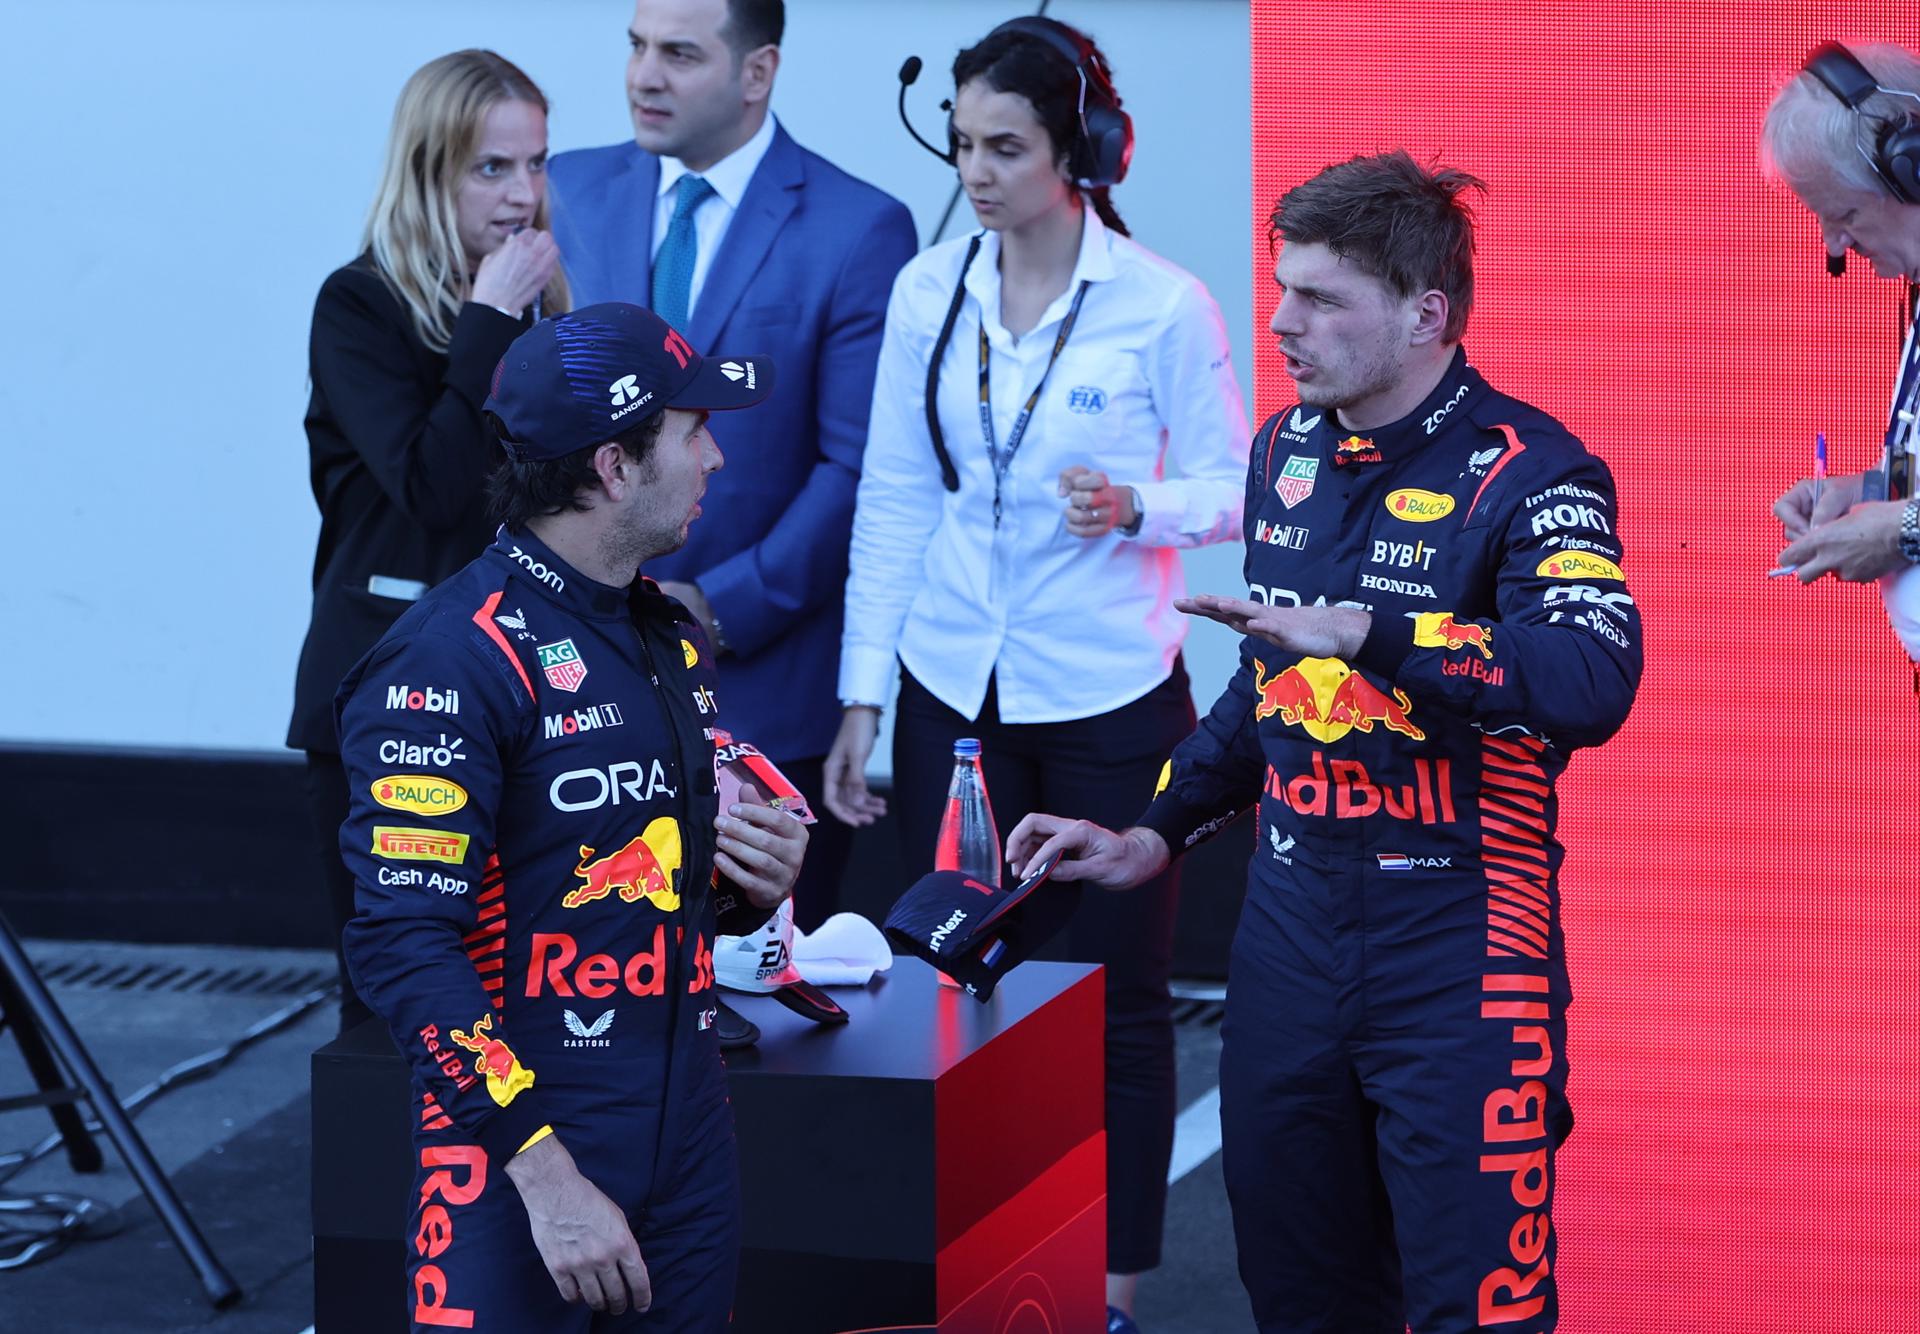 Polvorí a Red Bull, Max Verstappen, encarat amb Checo Pérez i amb Lewis Hamilton i Mercedes sobre la taula